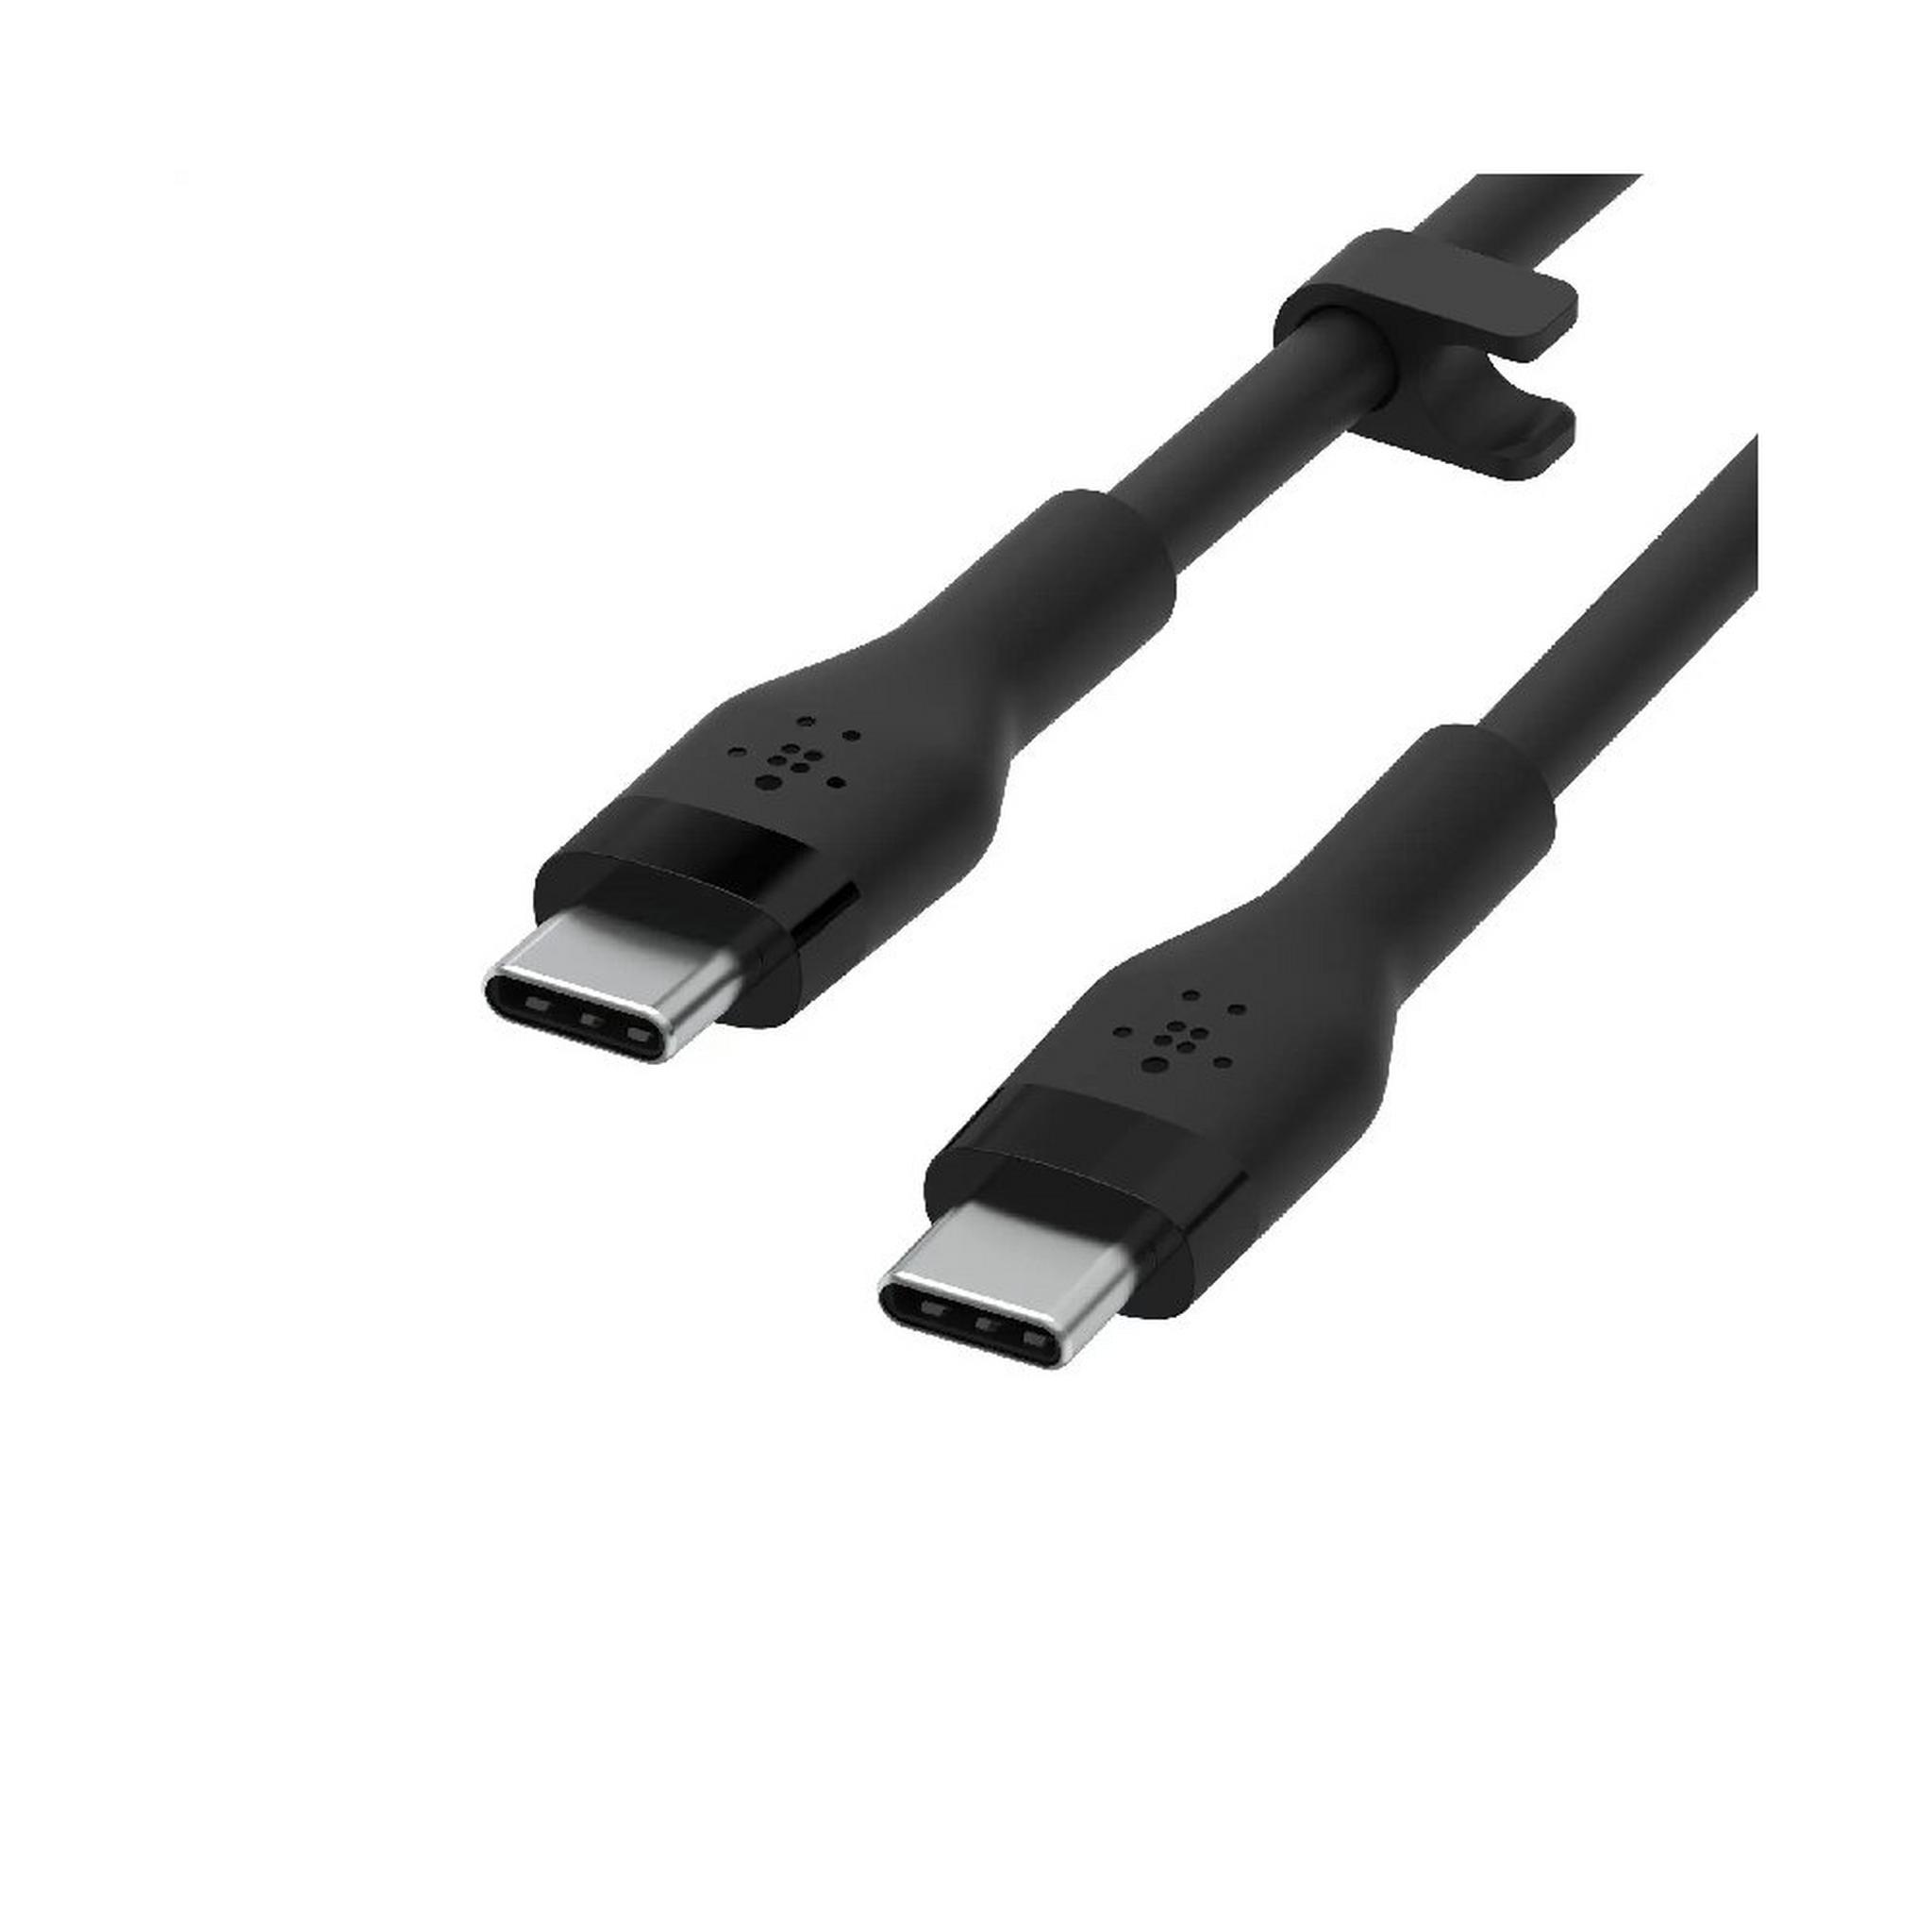 BELKIN Boostcharge Pro Flex USB-C To USB-C Cable, 3M, CAB009bt3MBK – Black